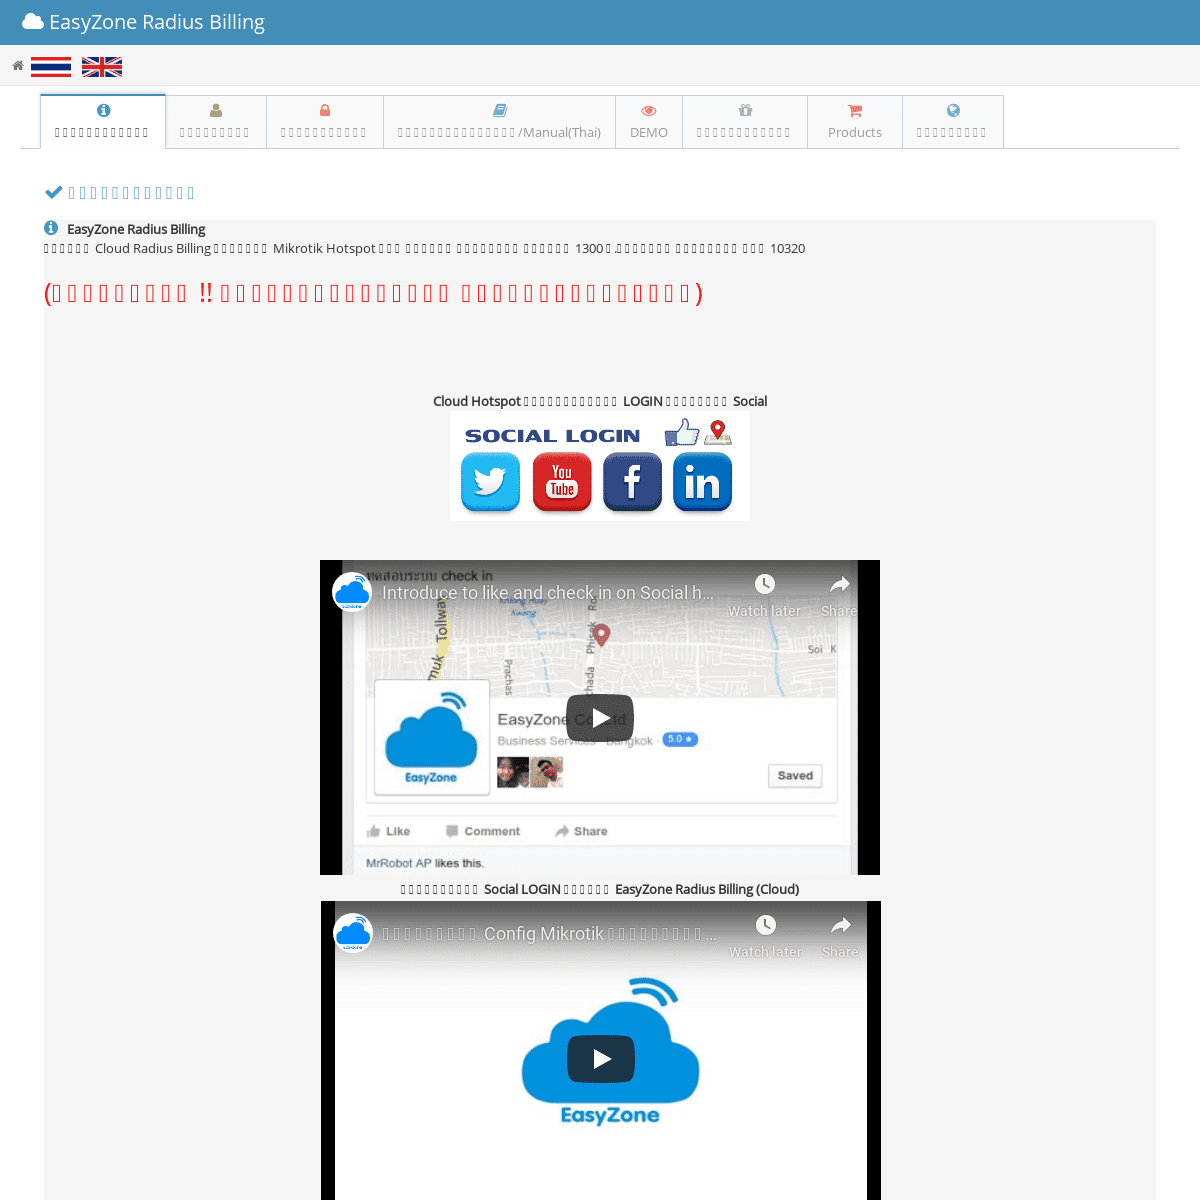 A complete backup of cloud-hotspot.com